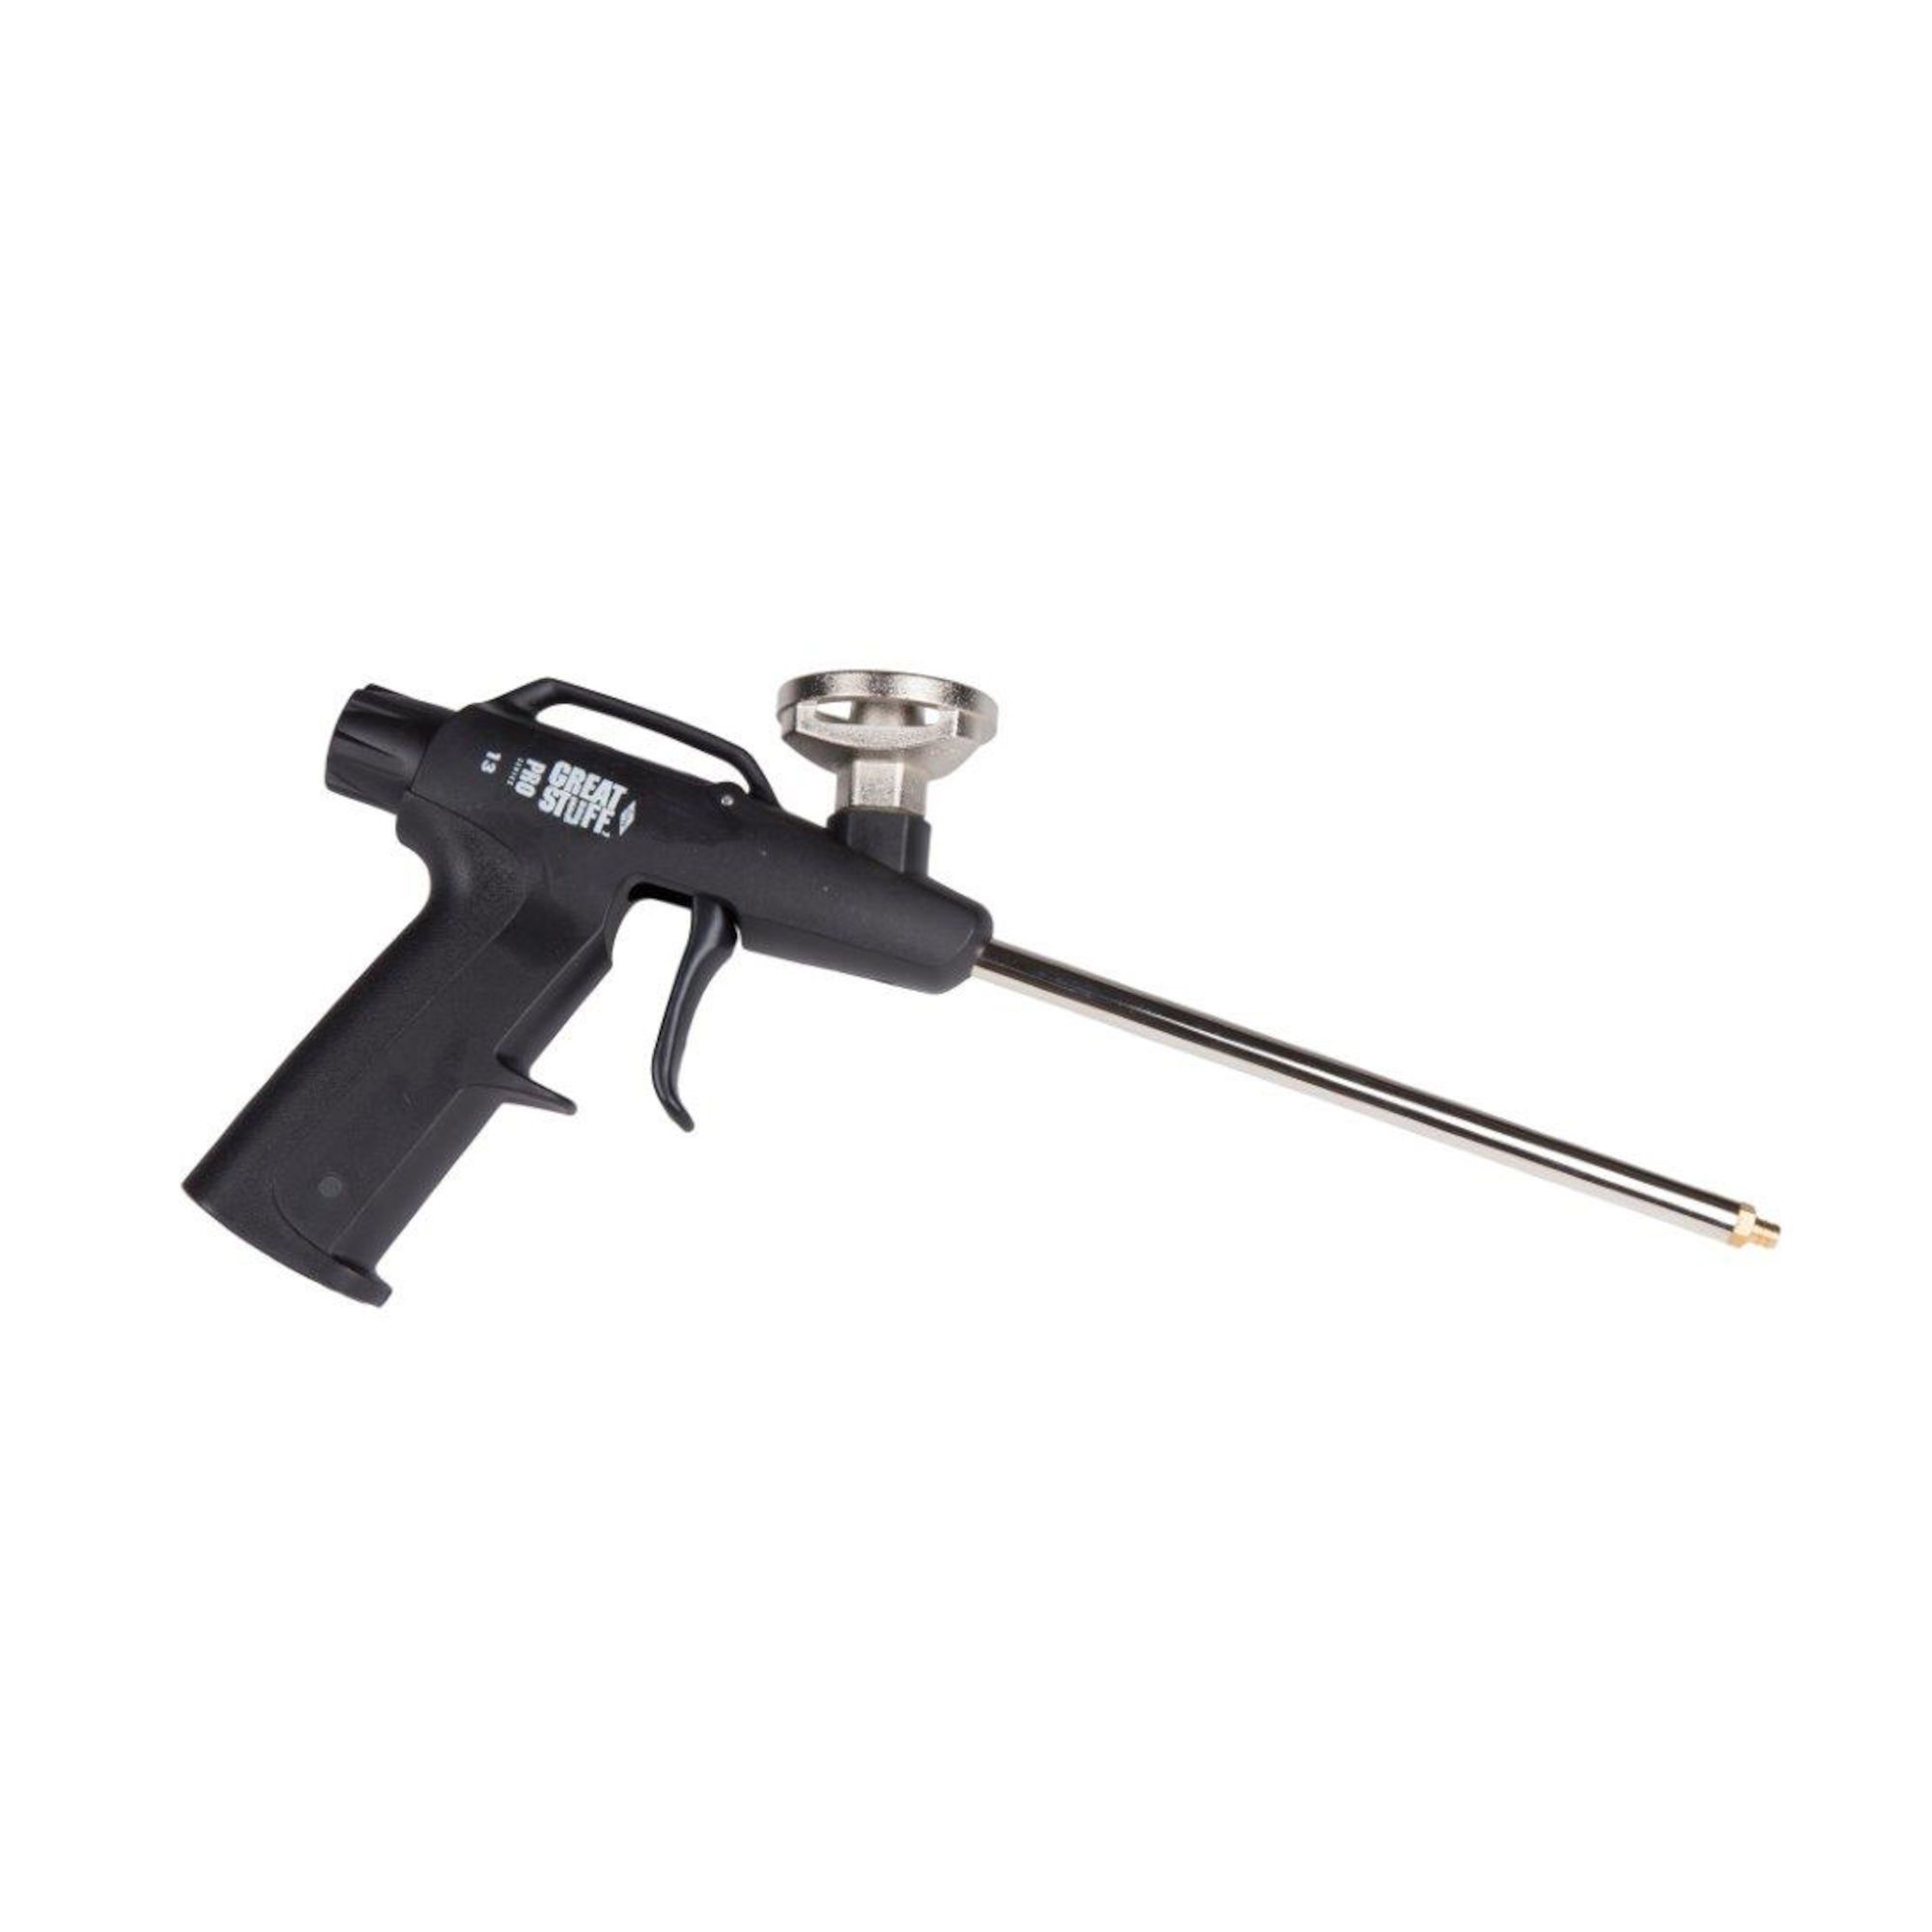 Mousse isolante de polyuréthane flexible Adfoam, version pistolet - 750 ml